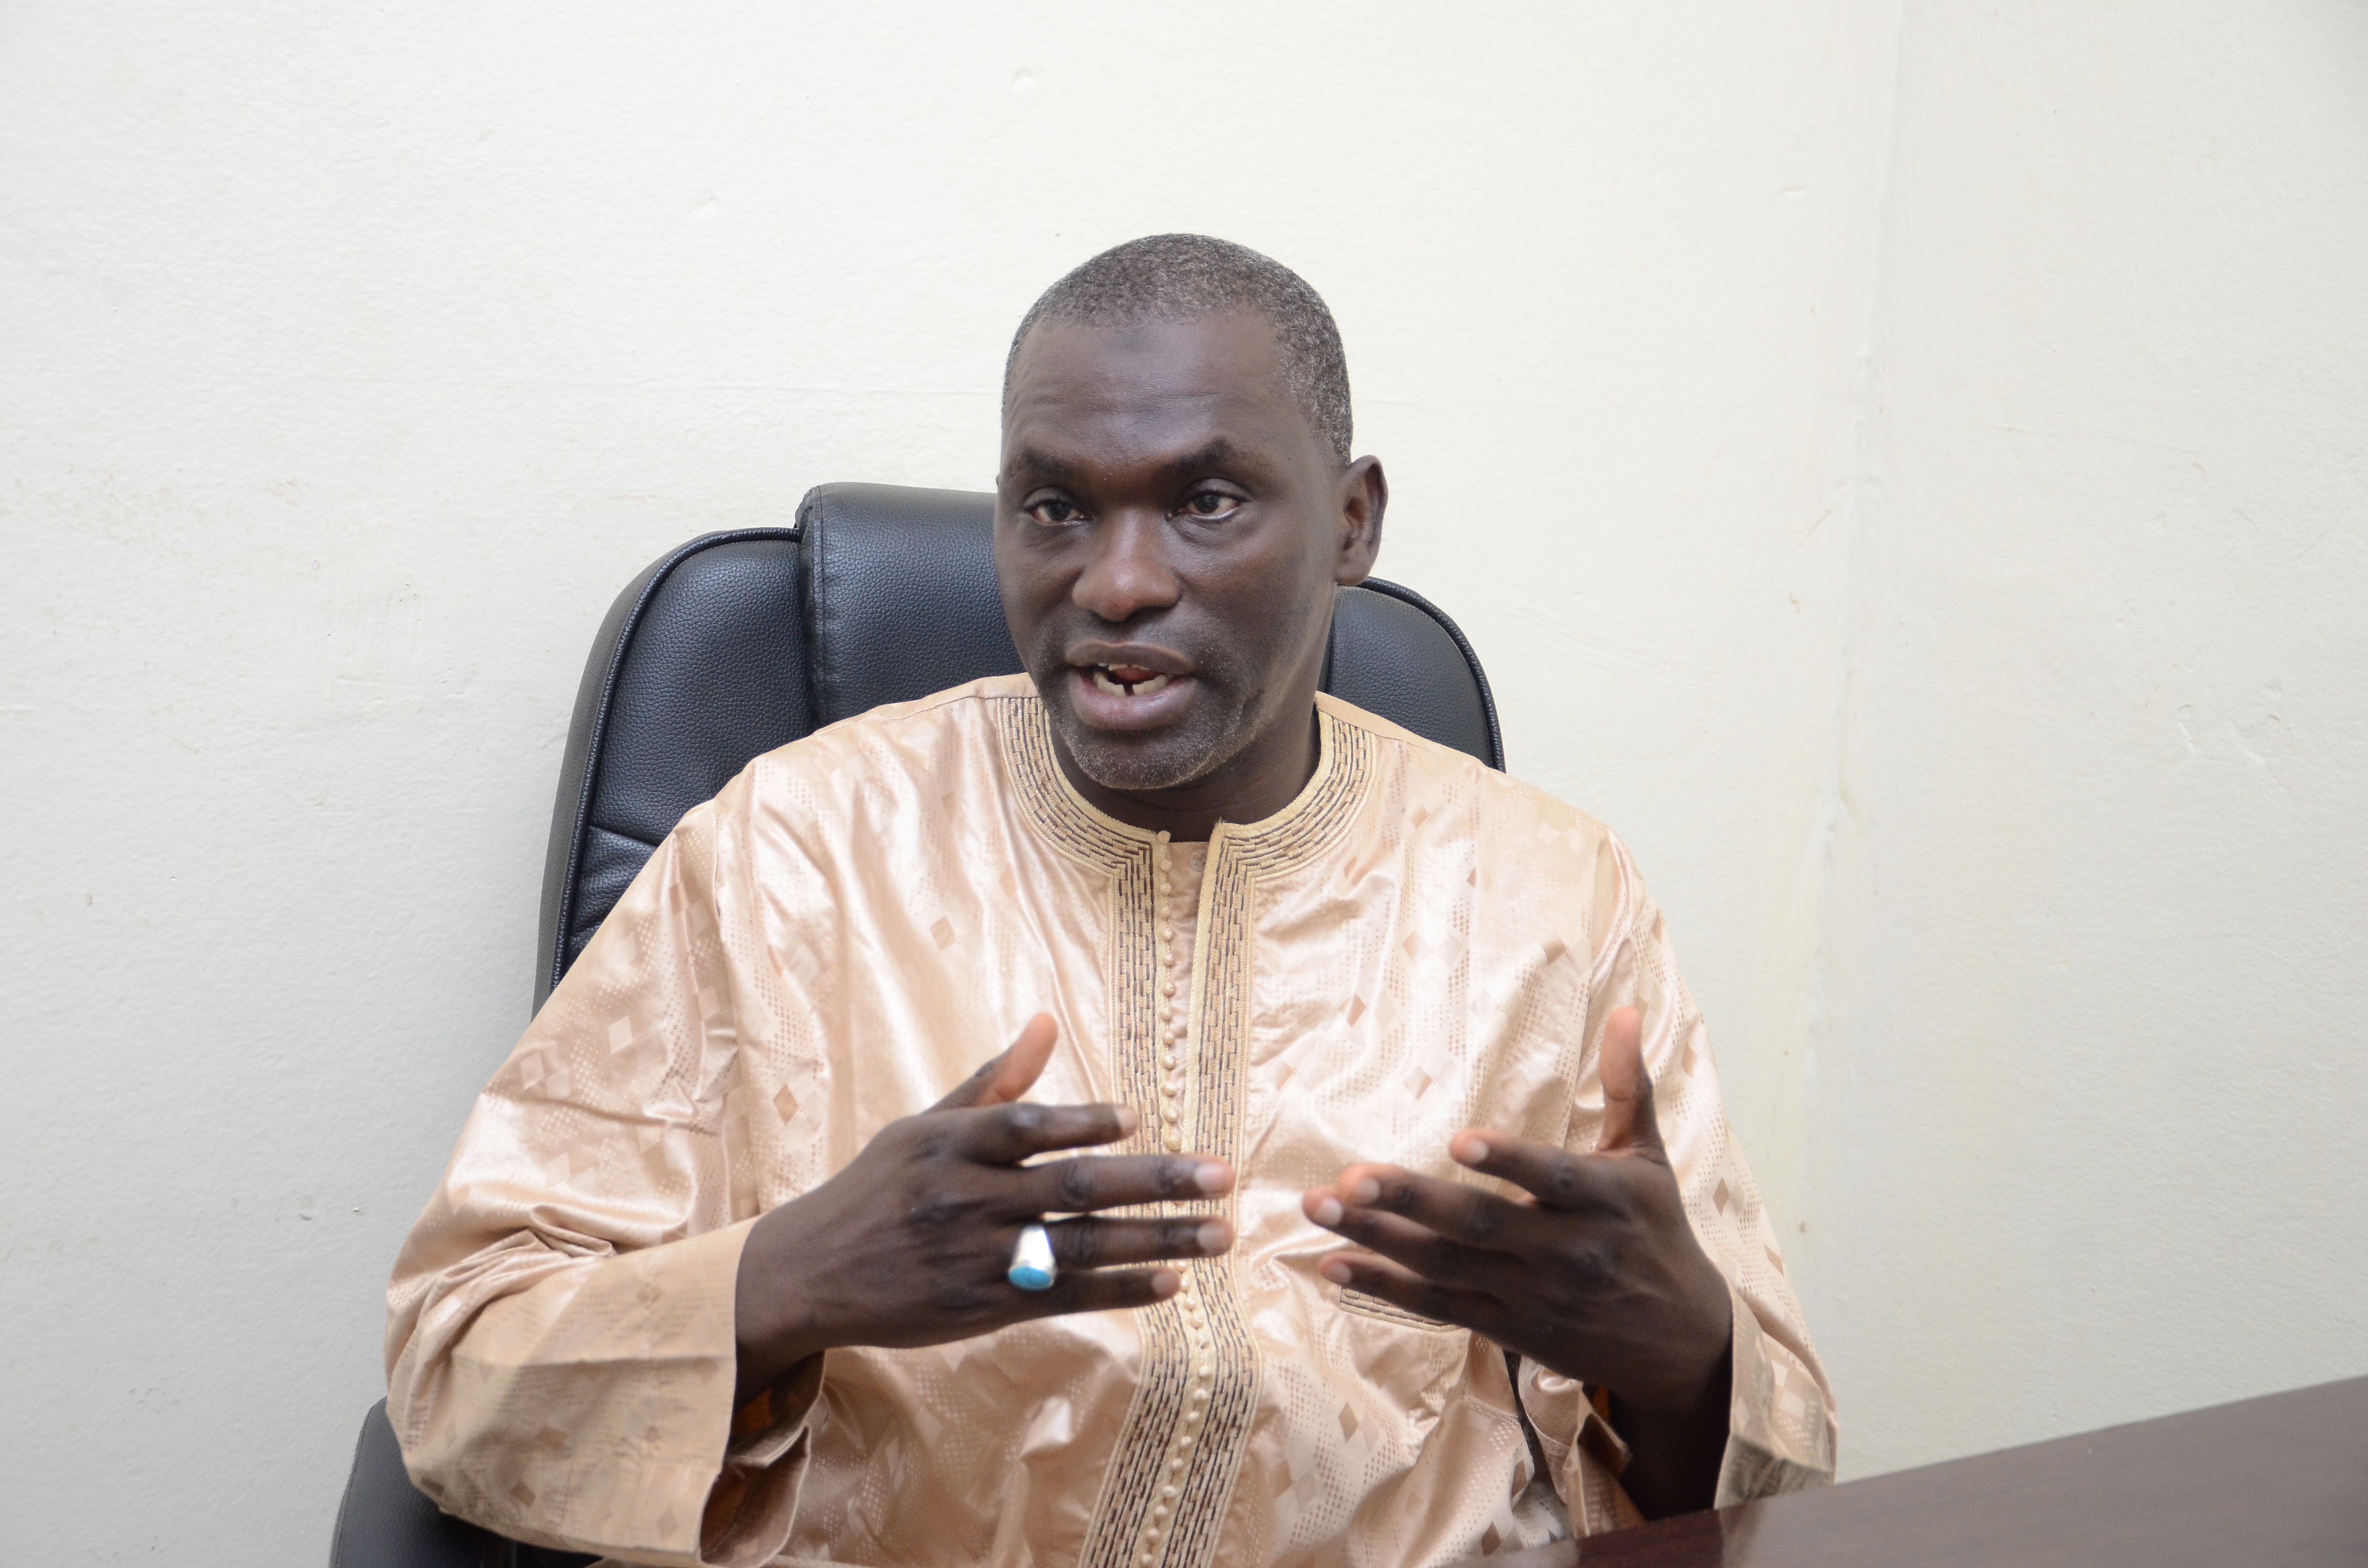 Pr Seydi Ababacar Dieng, directeur du Larem, Ucad :  «Les envois de fonds des migrants et les rémunérations des salariés constituent en moyenne 10% du Pib du Sénégal »